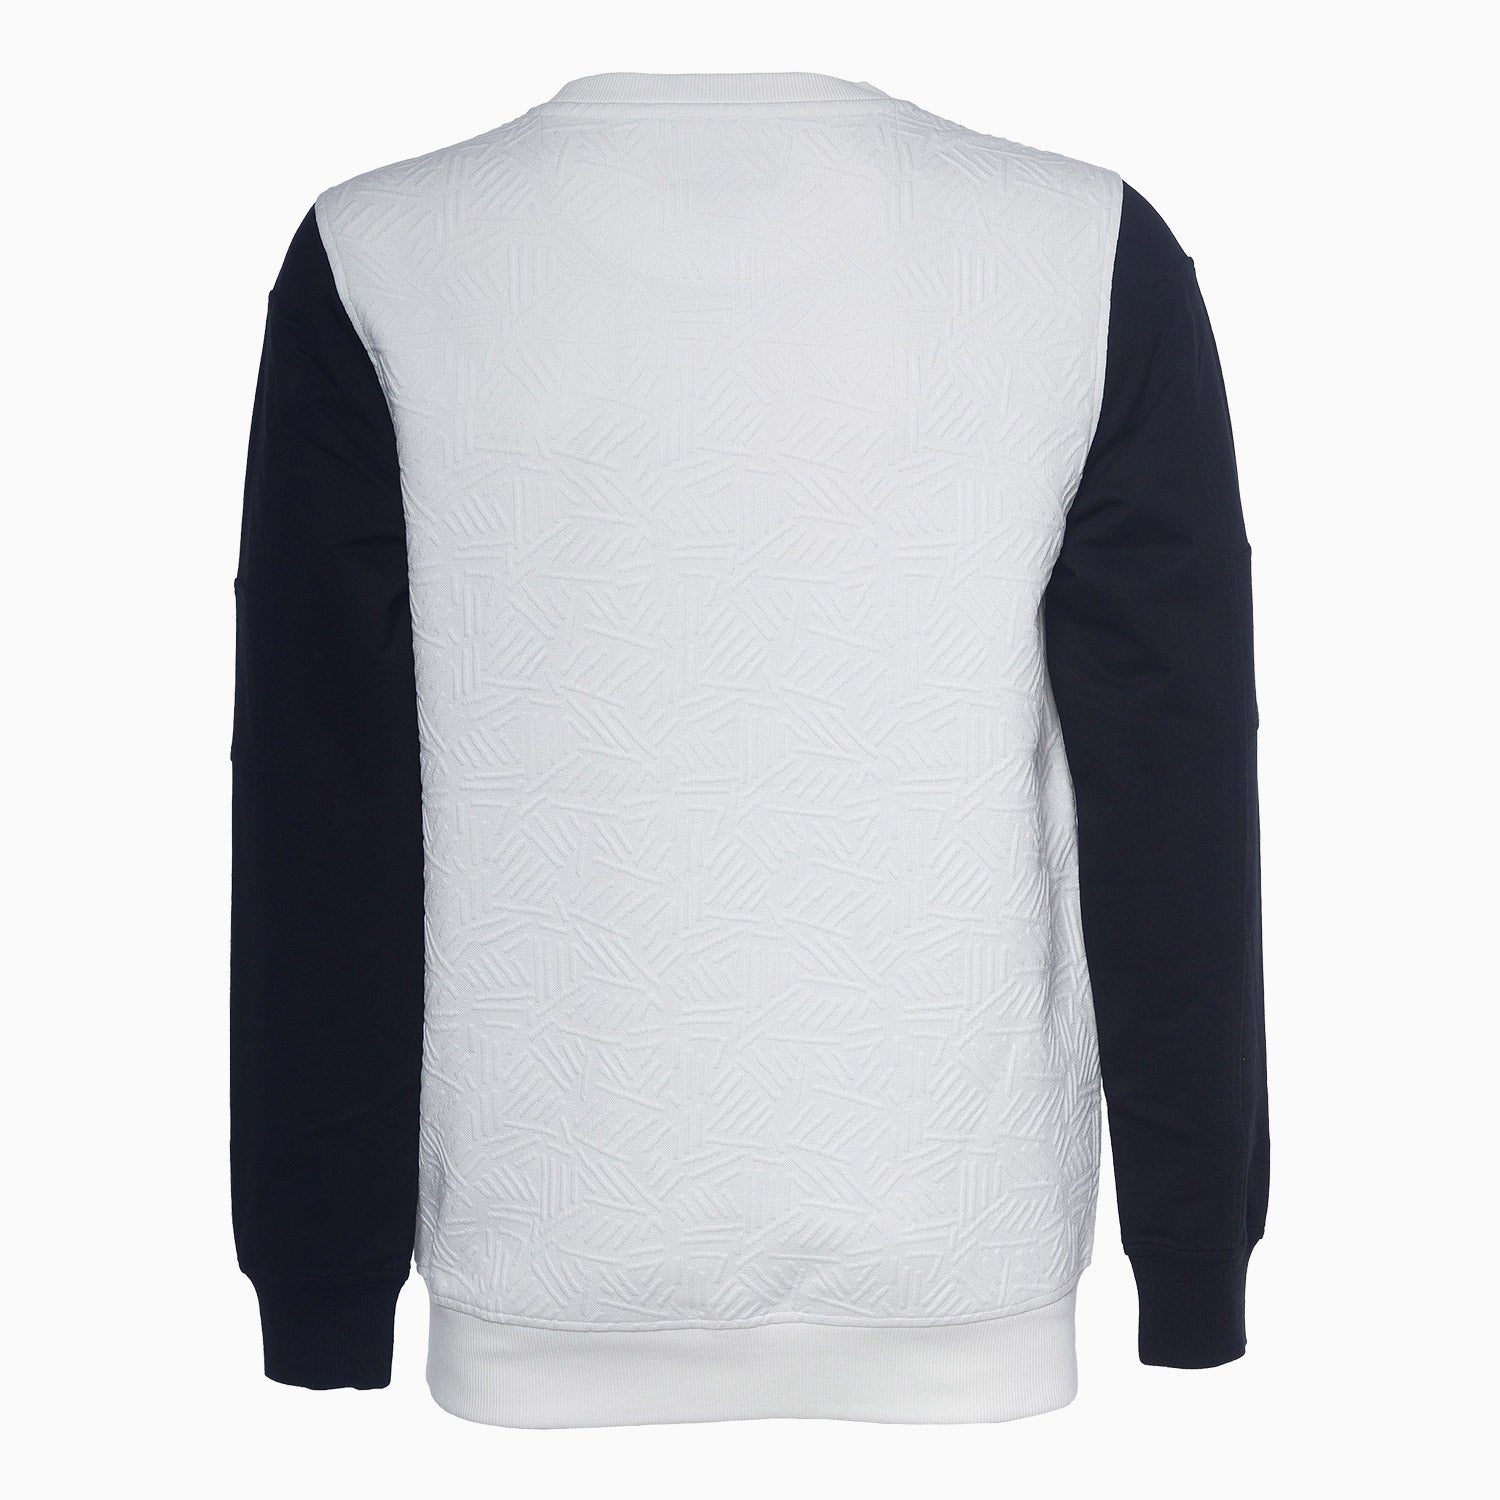 a-tiziano-mens-desmond-jacquard-knit-crew-neck-sweatshirt-41atm4014-wht